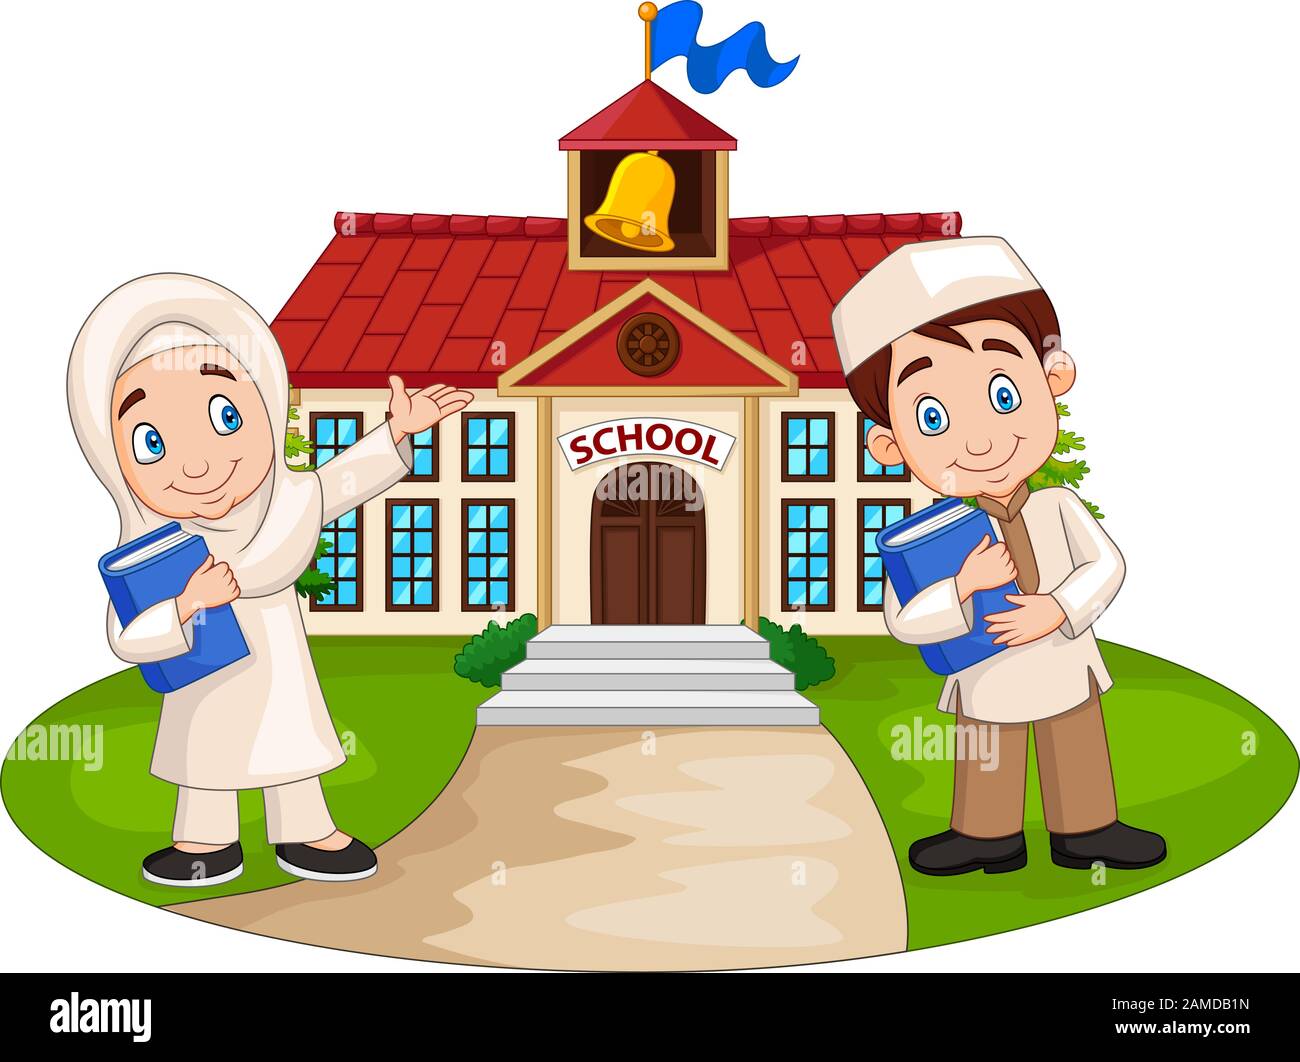 Happy cartoon Muslim kids in front of school building Stock Vector Image &  Art - Alamy